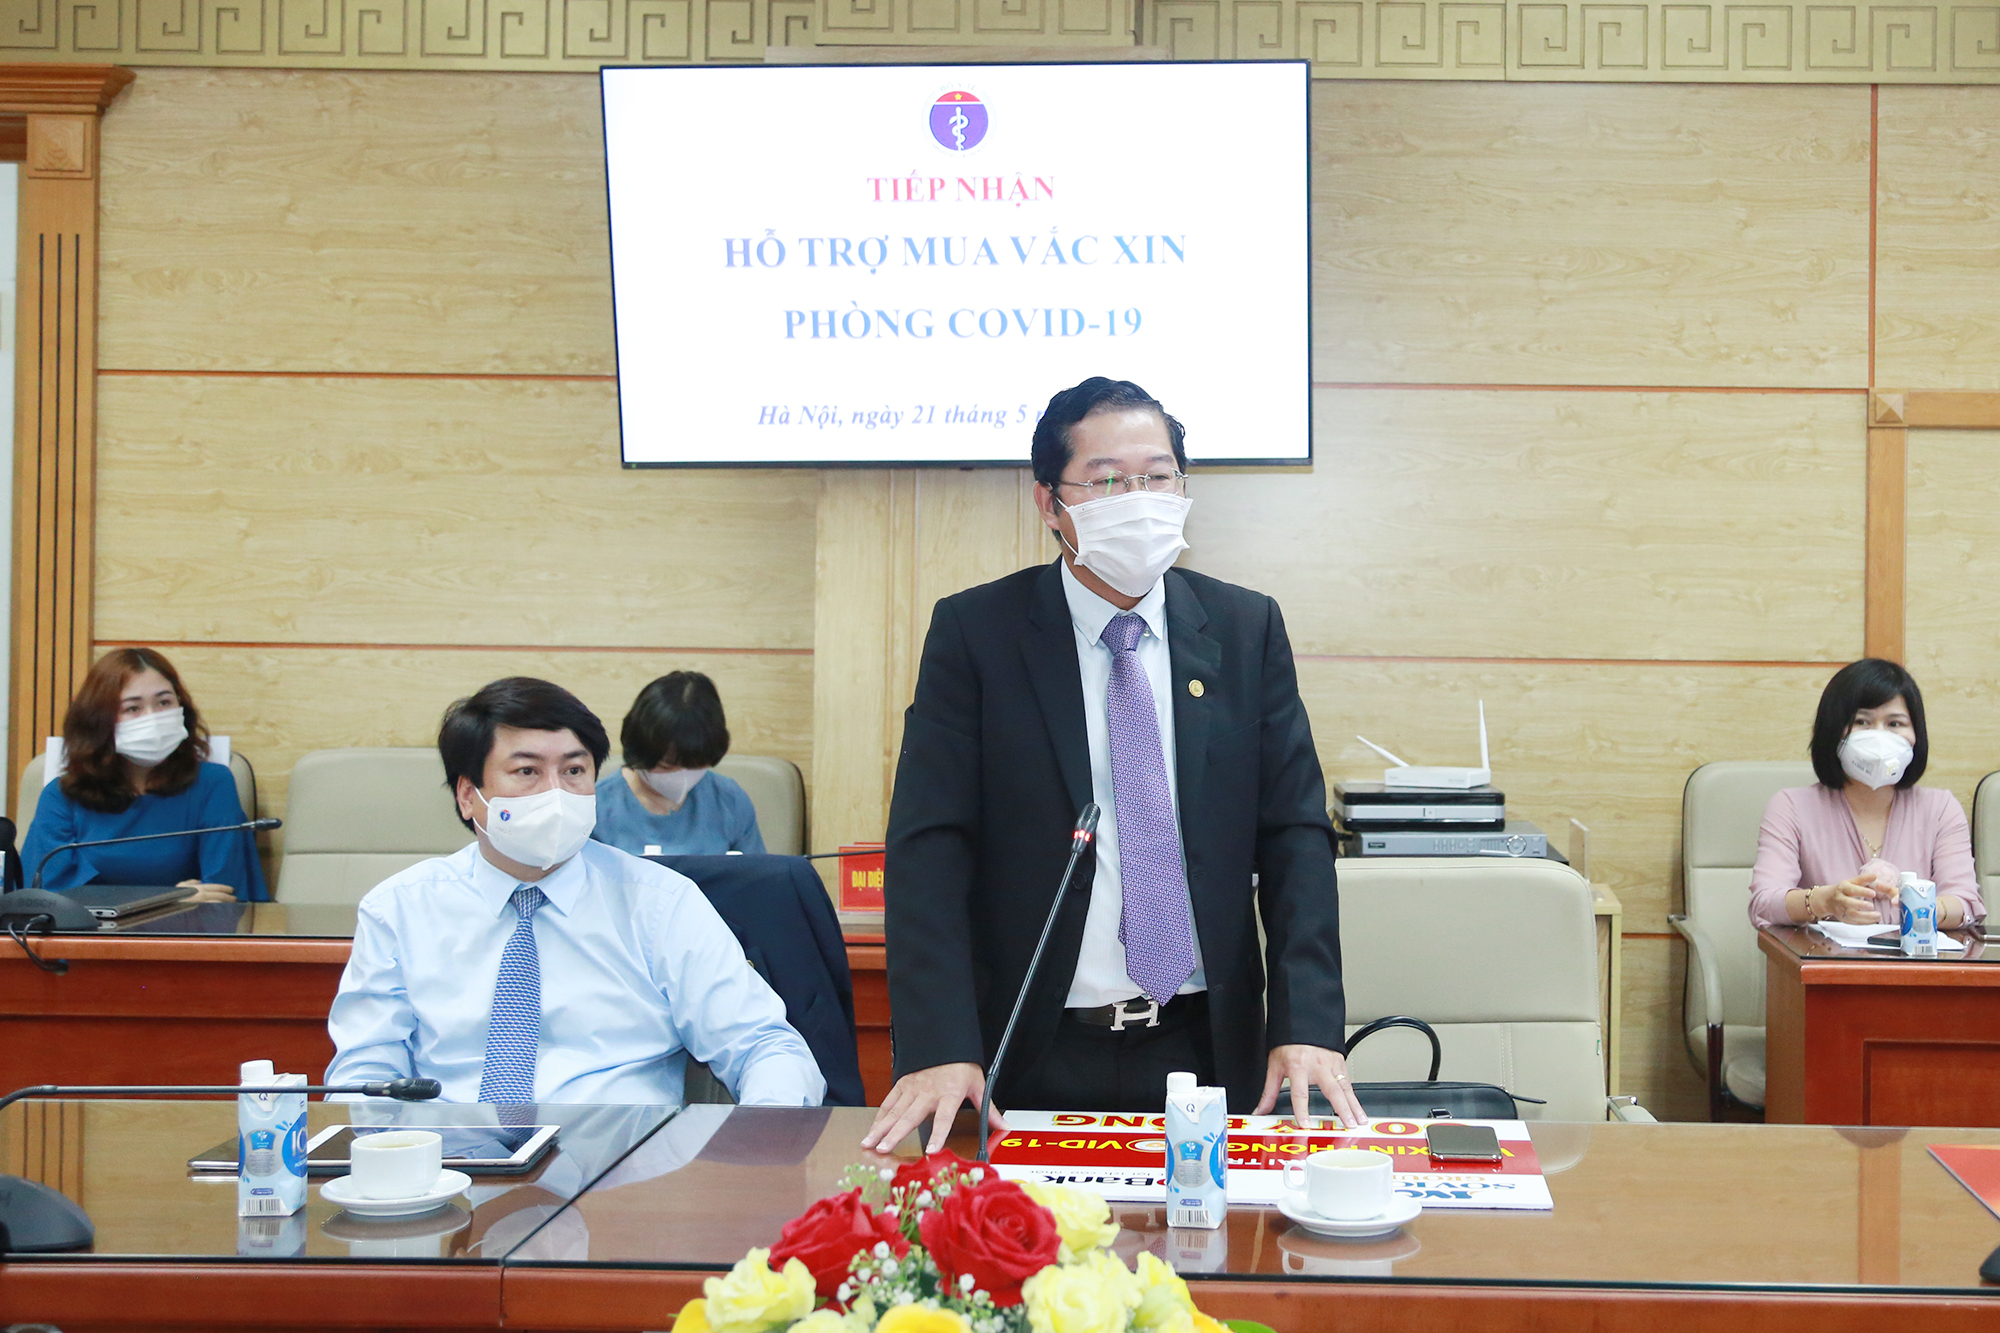 Ông Phạm Quốc Thanh - Tổng giám đốc HDBank phát biểu tại buổi lễ. Ảnh: HDBank